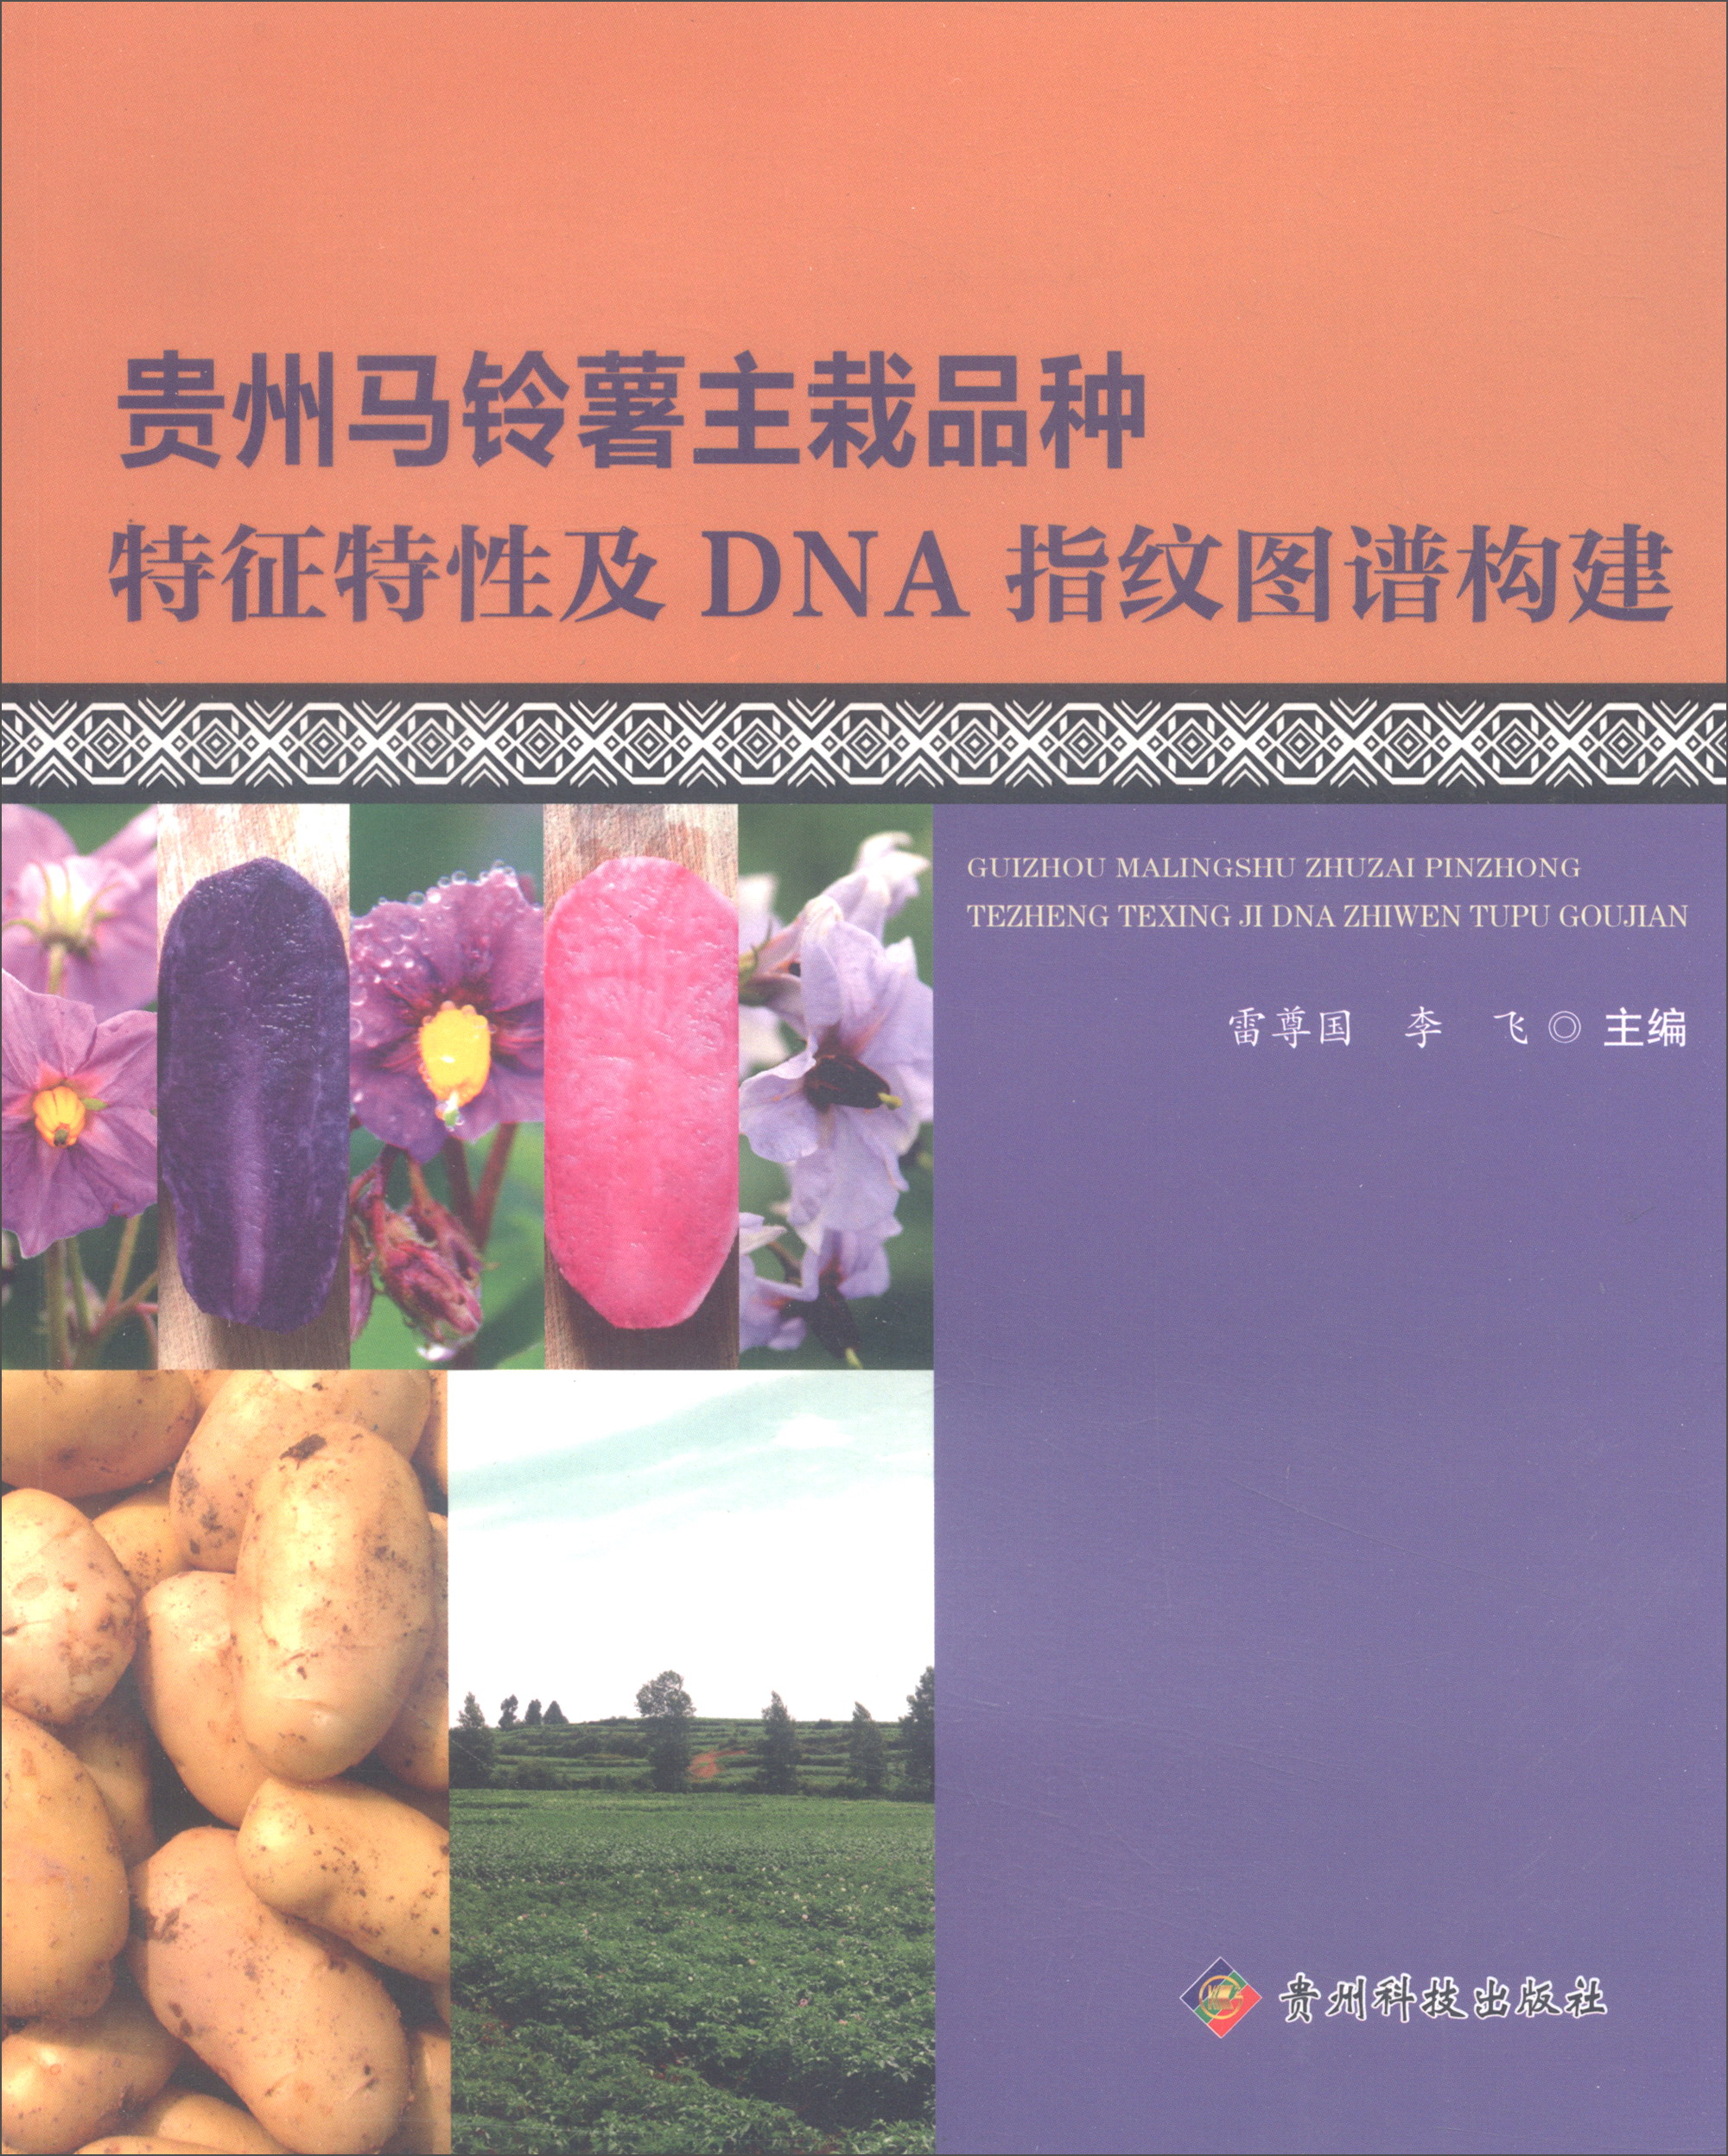 贵州马铃薯主栽品种特征特性及DNA指纹图谱构建 txt格式下载